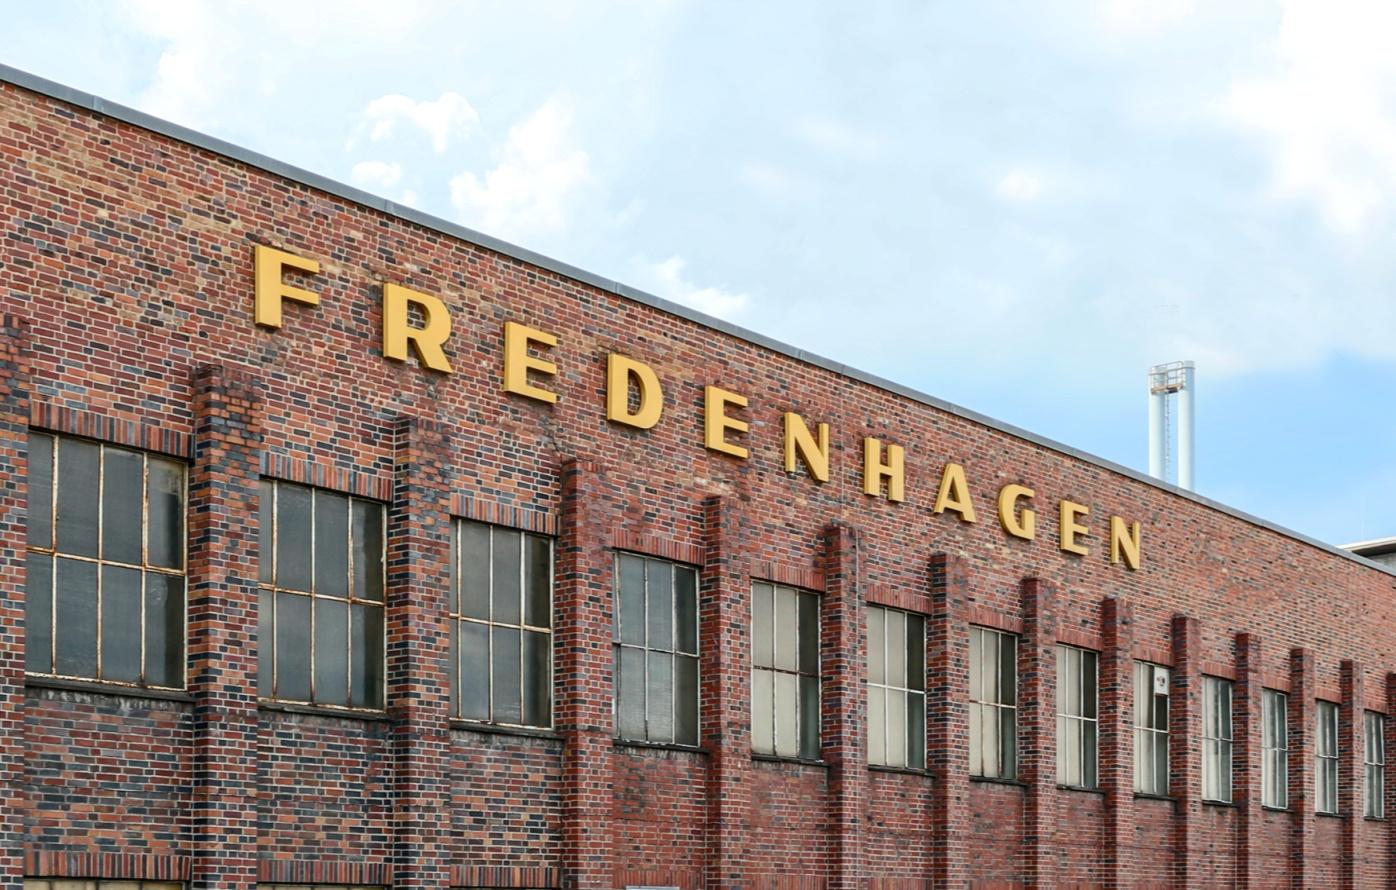 Die 'Alte Dame' FREDENHAGEN EINE WIE KEINE Größe, Lage, Ausstrahlung und Ambiente sind Alleinstellungsmerkmale dieses über 100 Jahre alten Industriebaus.